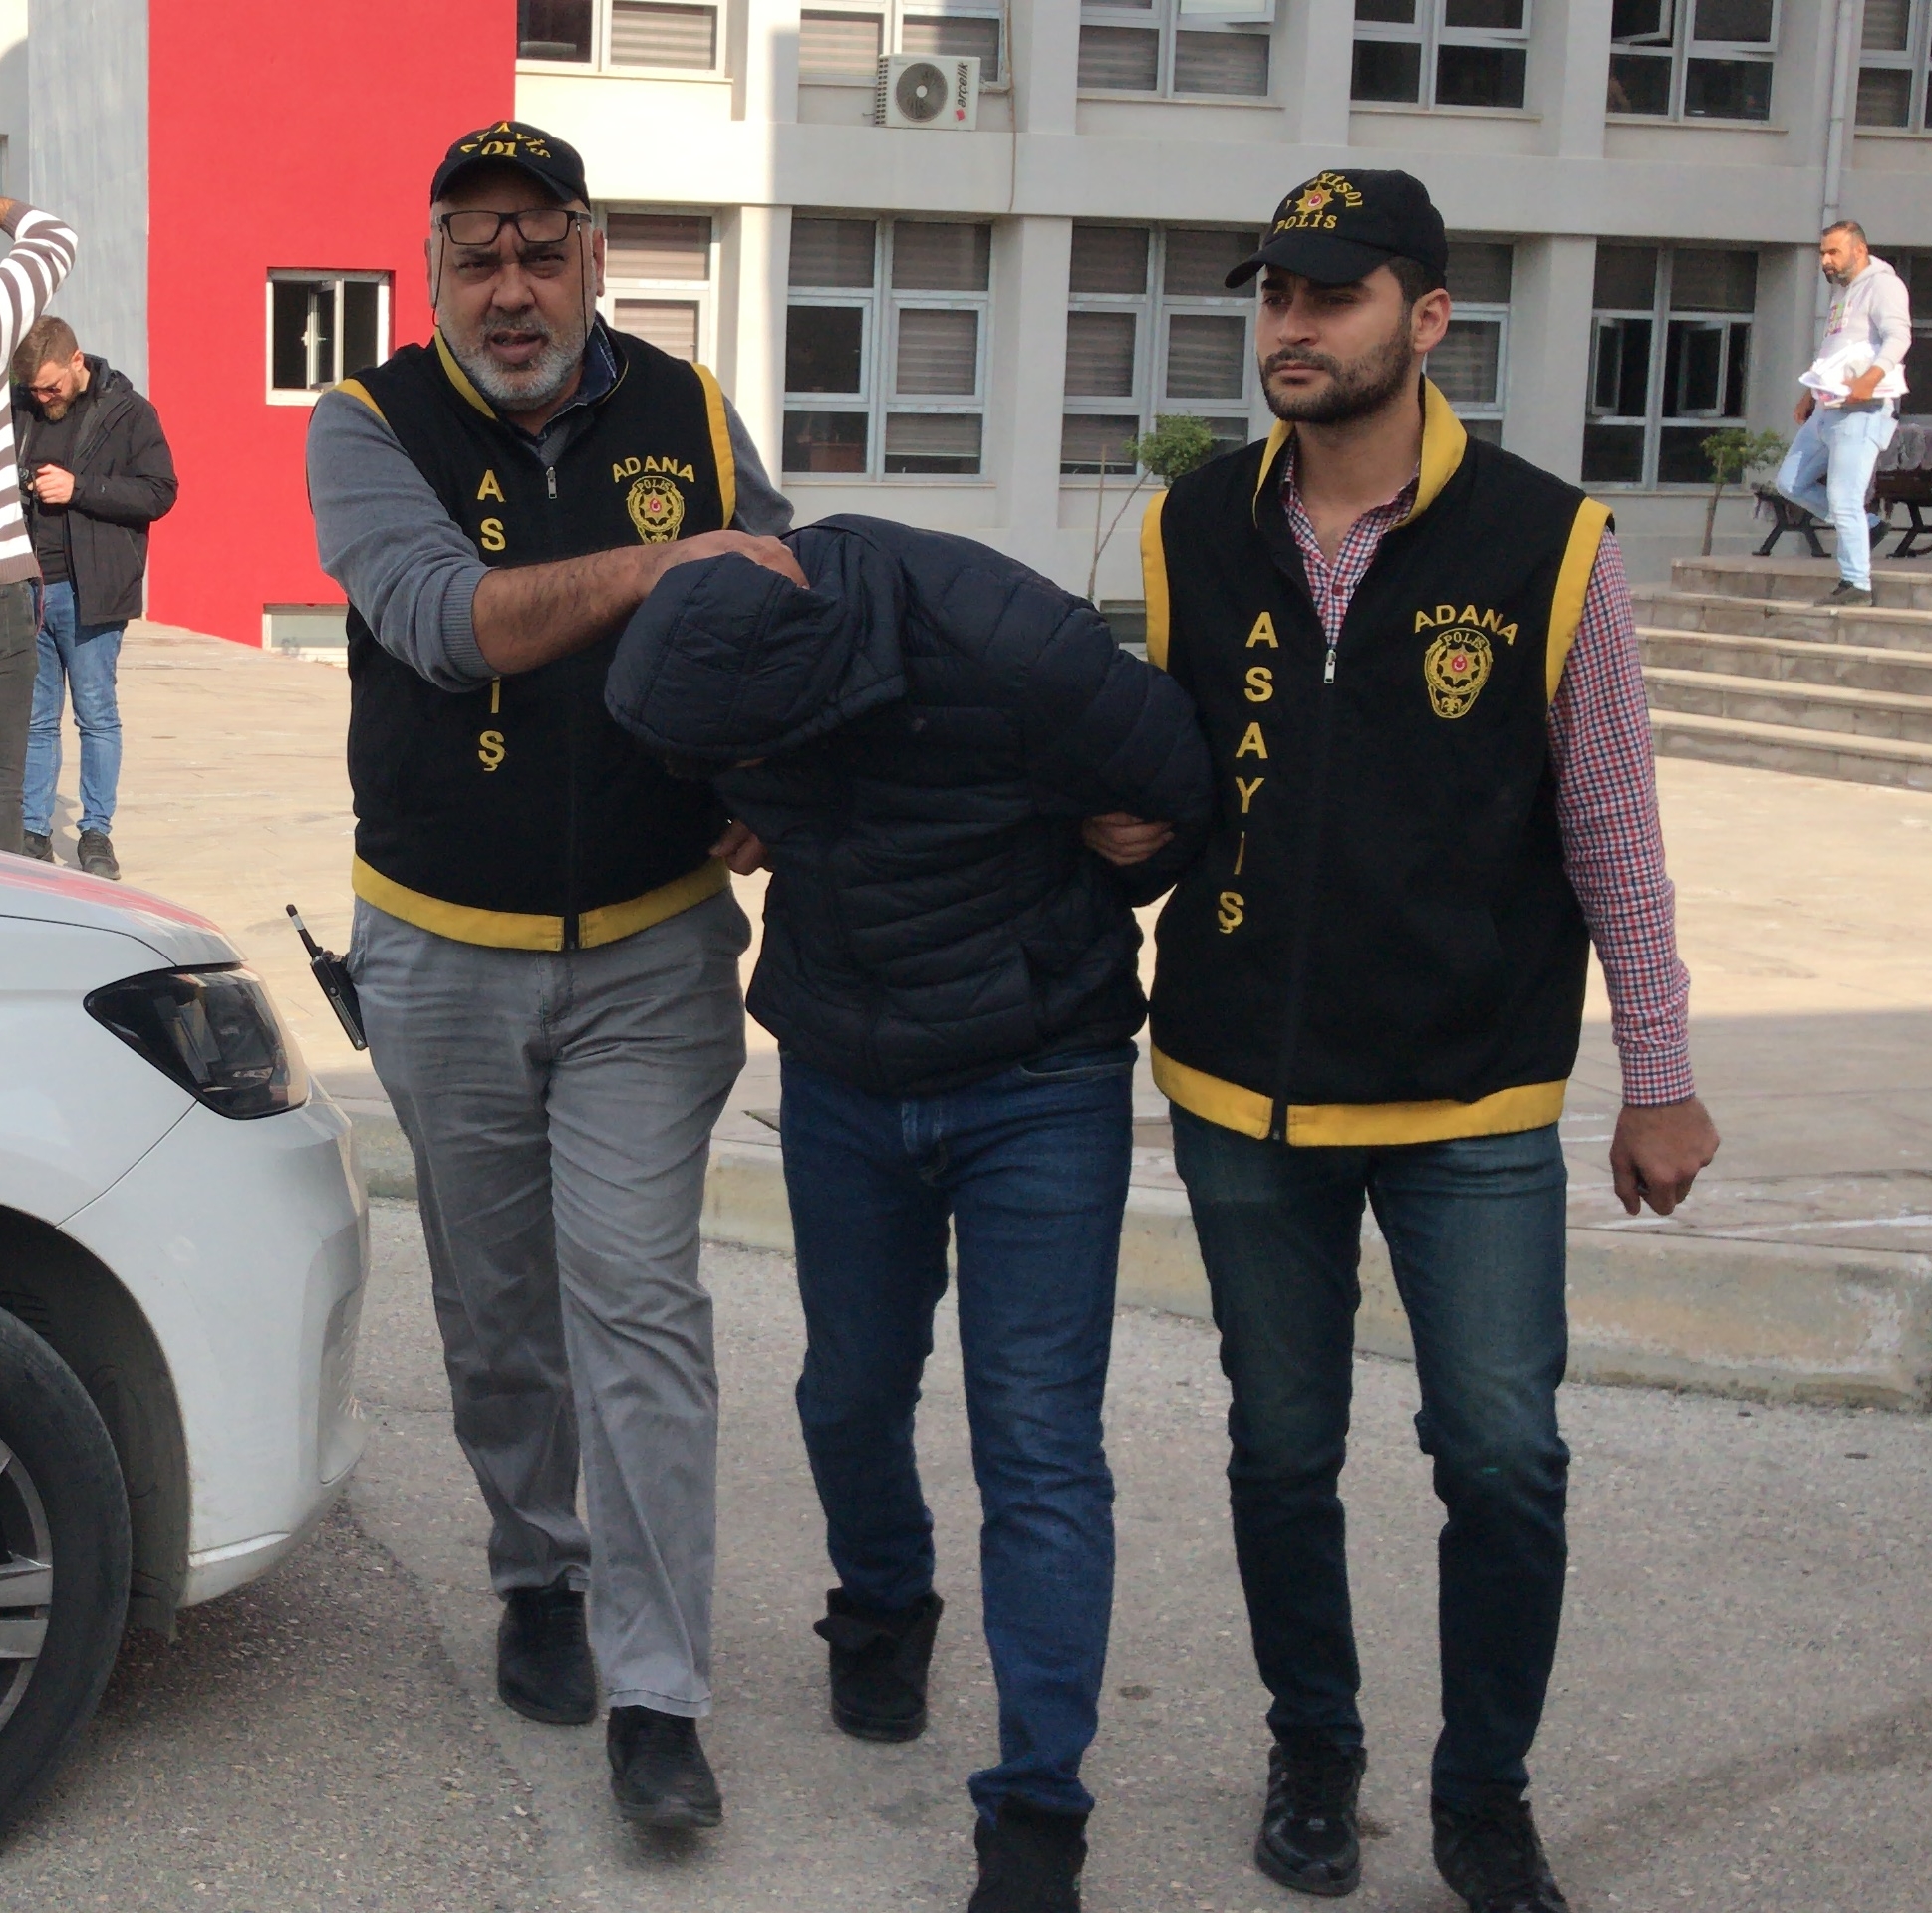 Adana'da parti binasında ve ofiste işkence iddiasına 5 tutuklama